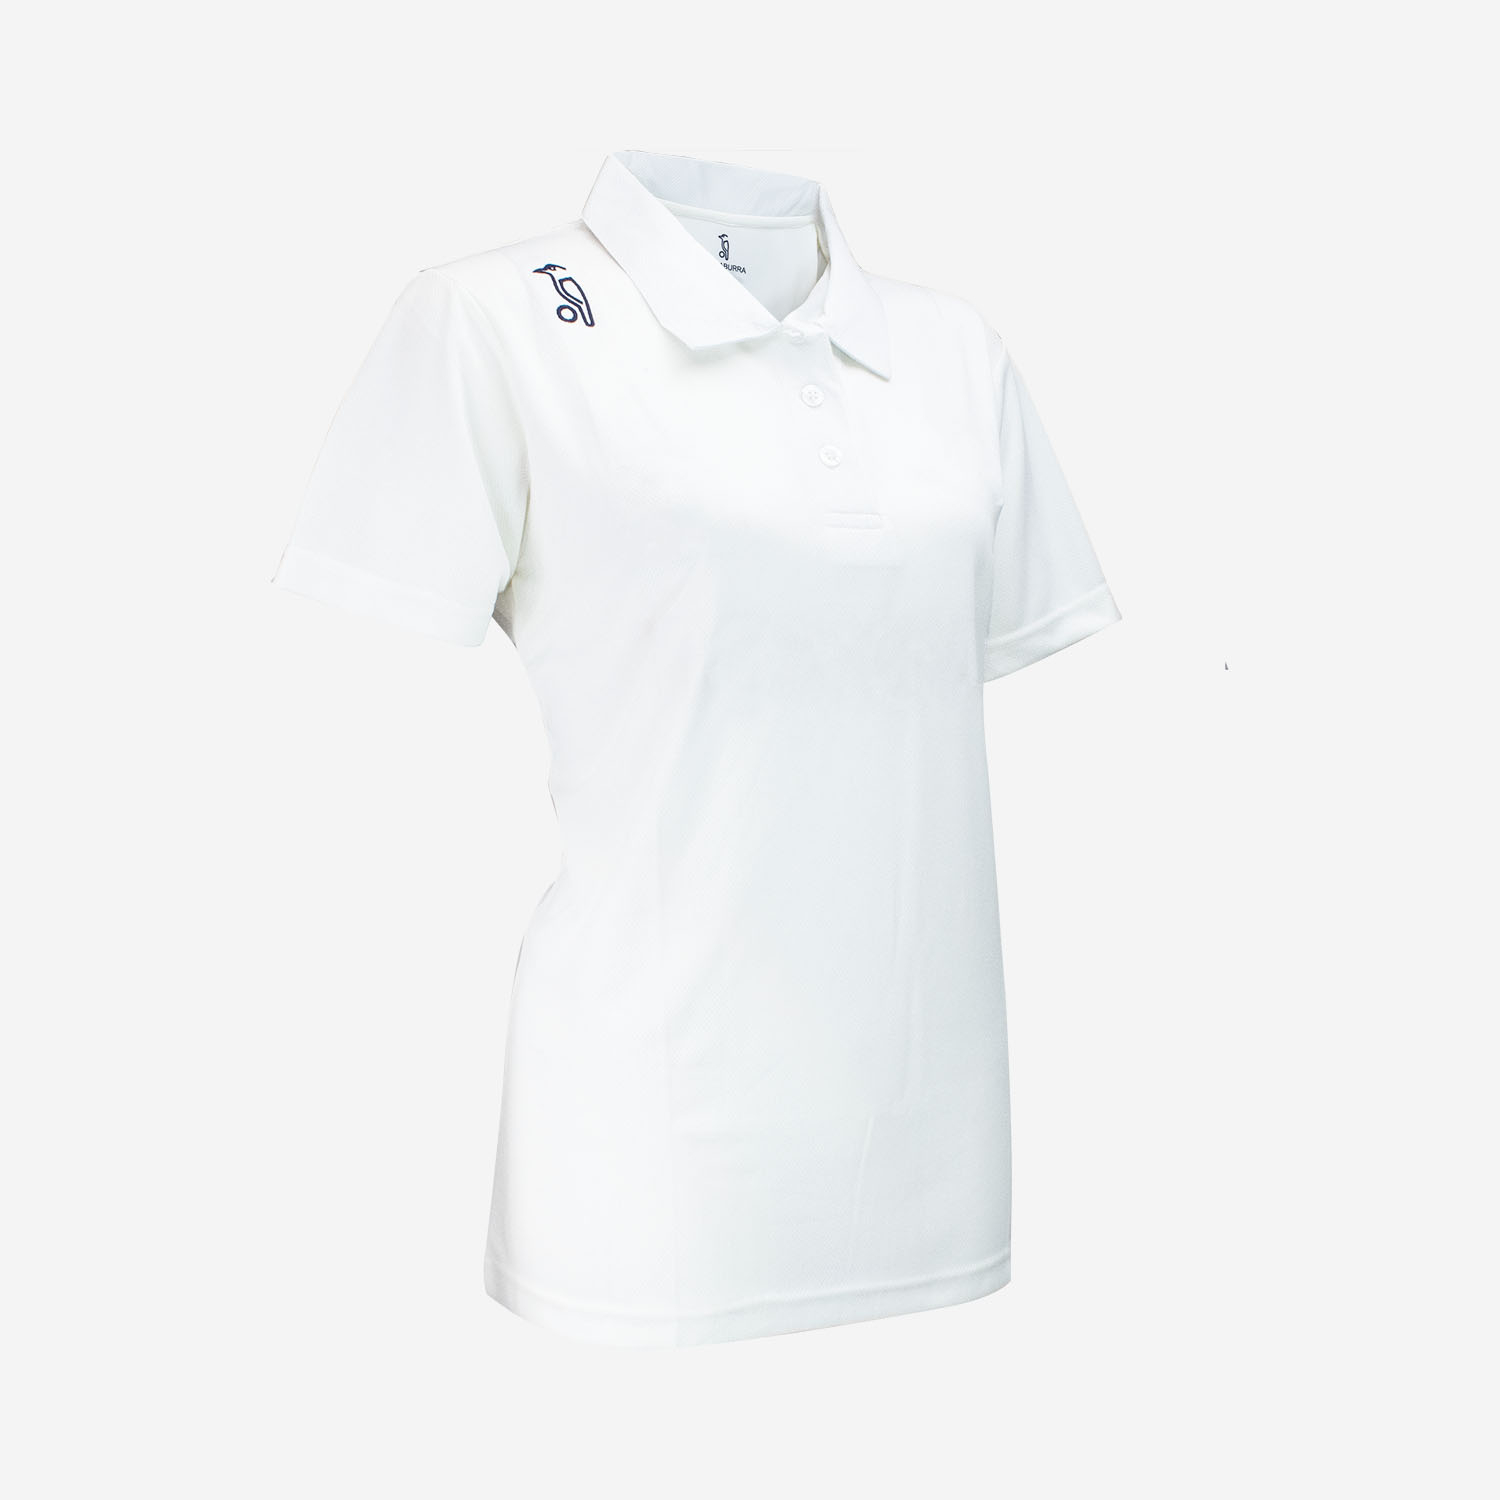 Kookaburra Ladies Cricket Shirt